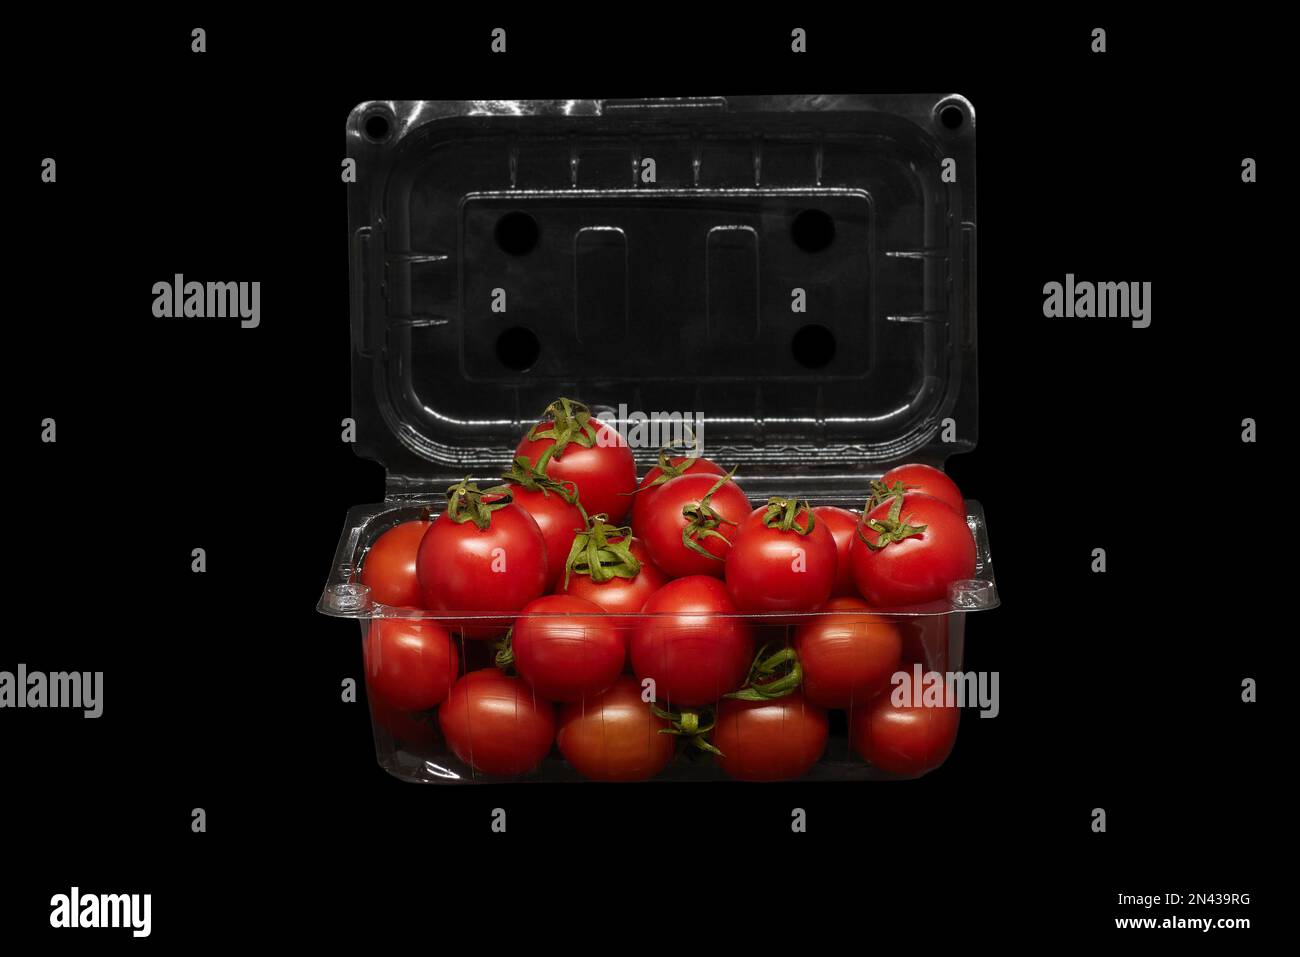 Immagine di pomodori piccoli in confezioni di plastica su sfondo nero Foto Stock